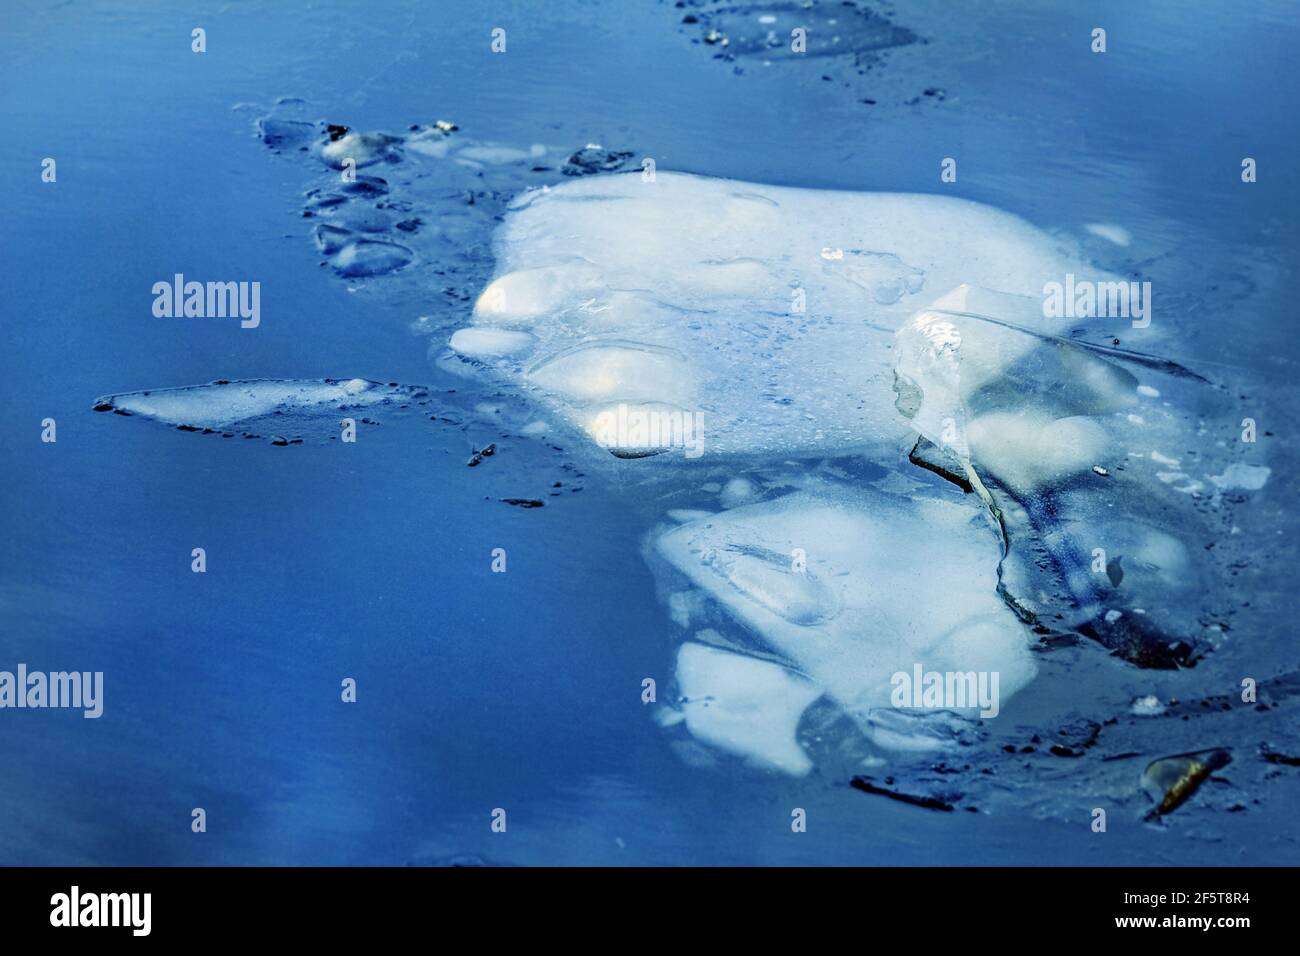 Véritable immense floe de glace dans l'eau profonde d'hiver bleue Banque D'Images